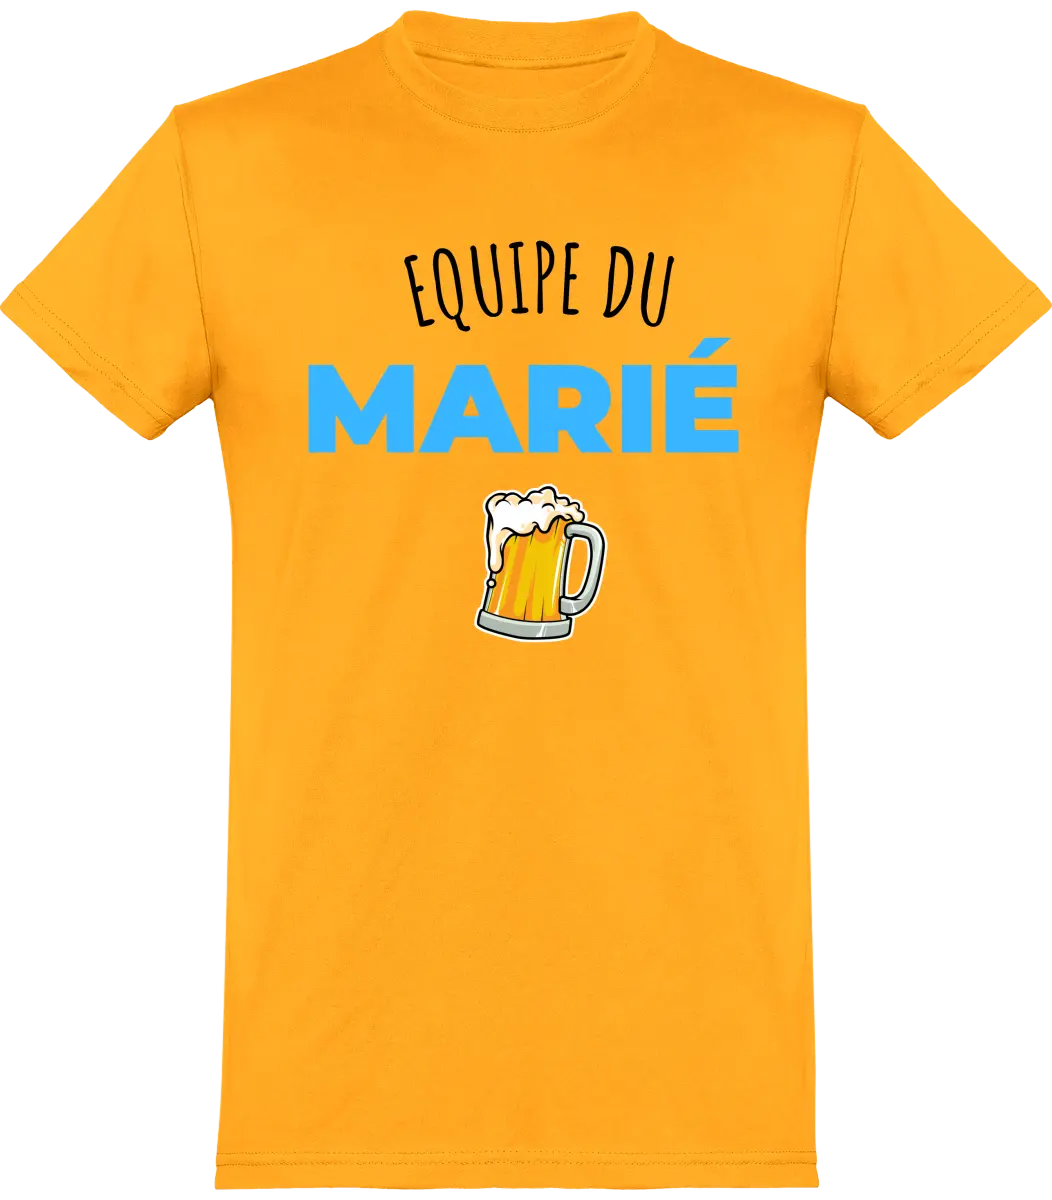 T-shirt EVG "Équipe du marié" | Mixte - French Humour